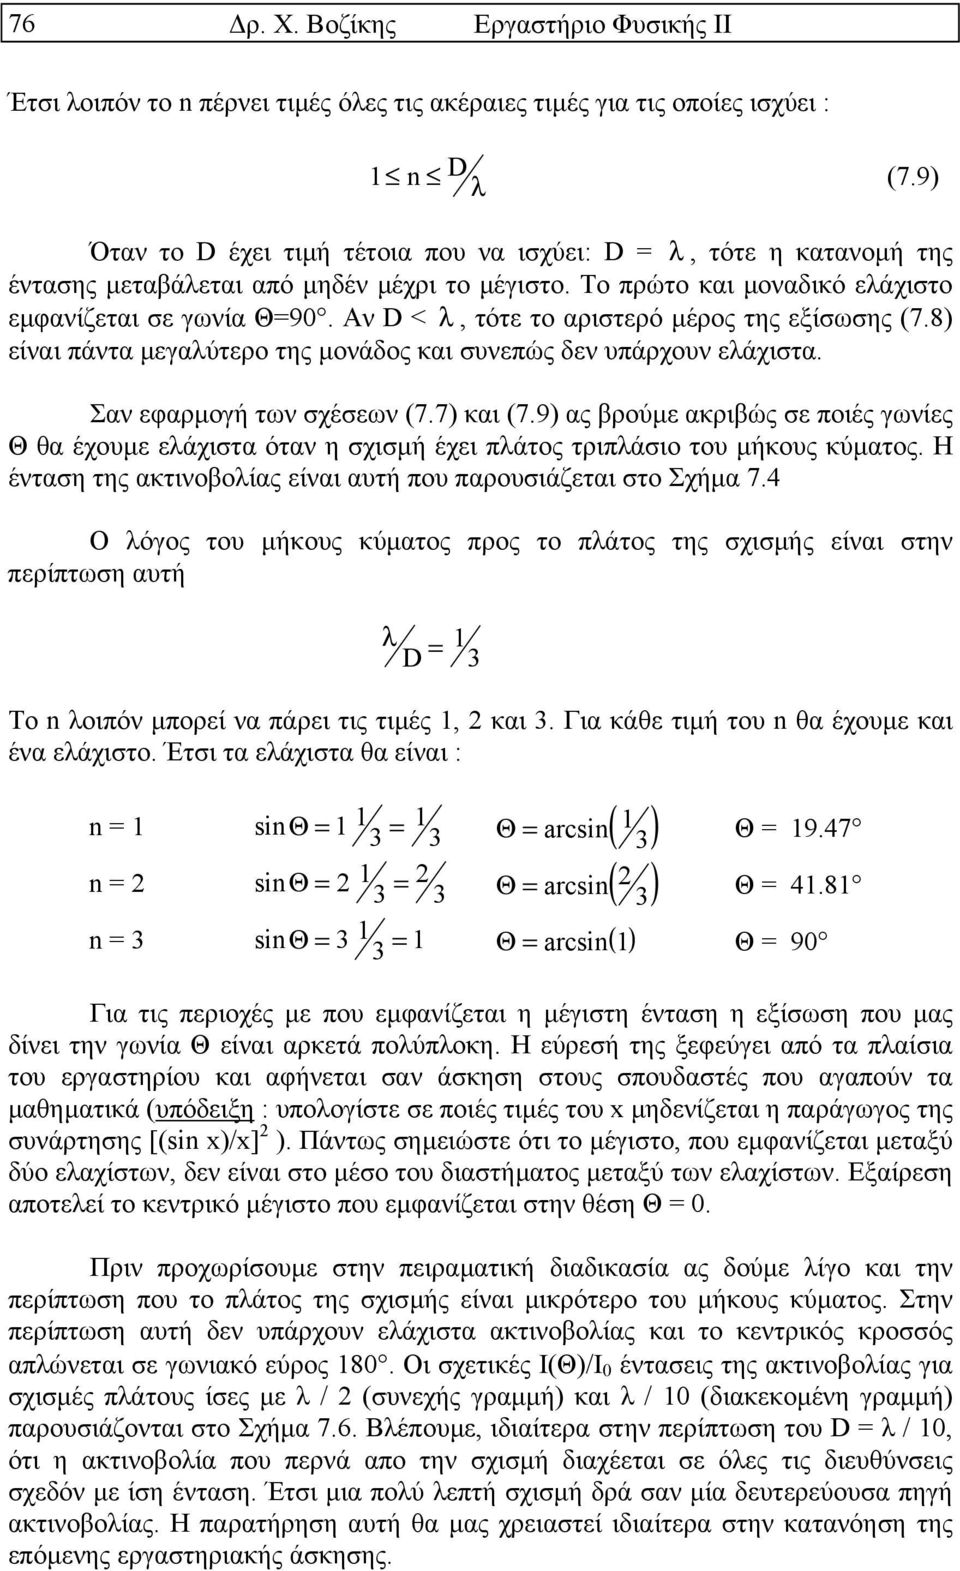 Αν D < λ, τότε το αριστερό µέρος της εξίσωσης (7.8) είναι πάντα µεγαλύτερο της µονάδος και συνεπώς δεν υπάρχουν ελάχιστα. Σαν εφαρµογή των σχέσεων (7.7) και (7.